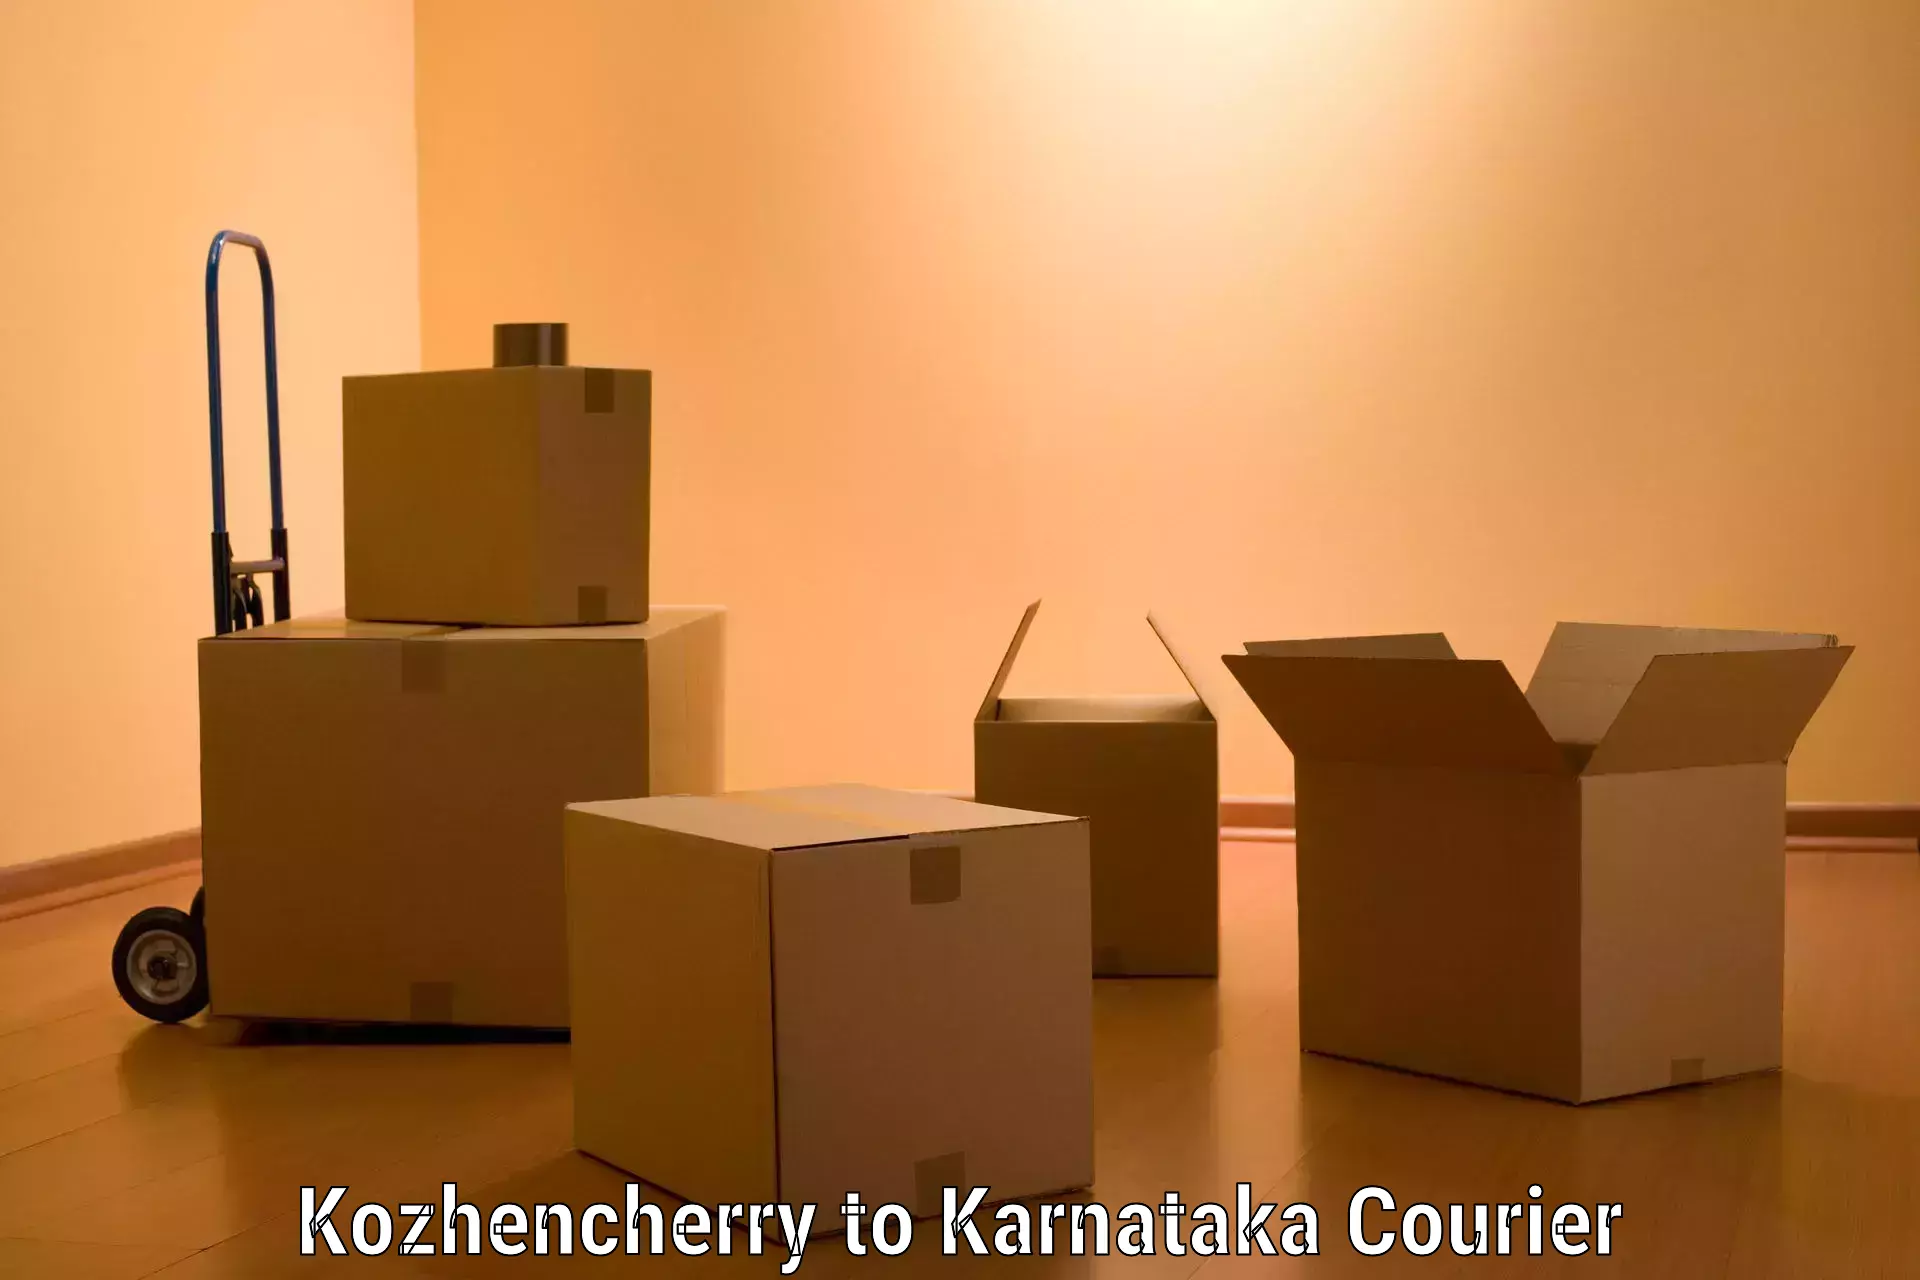 Trusted relocation services Kozhencherry to Karnataka